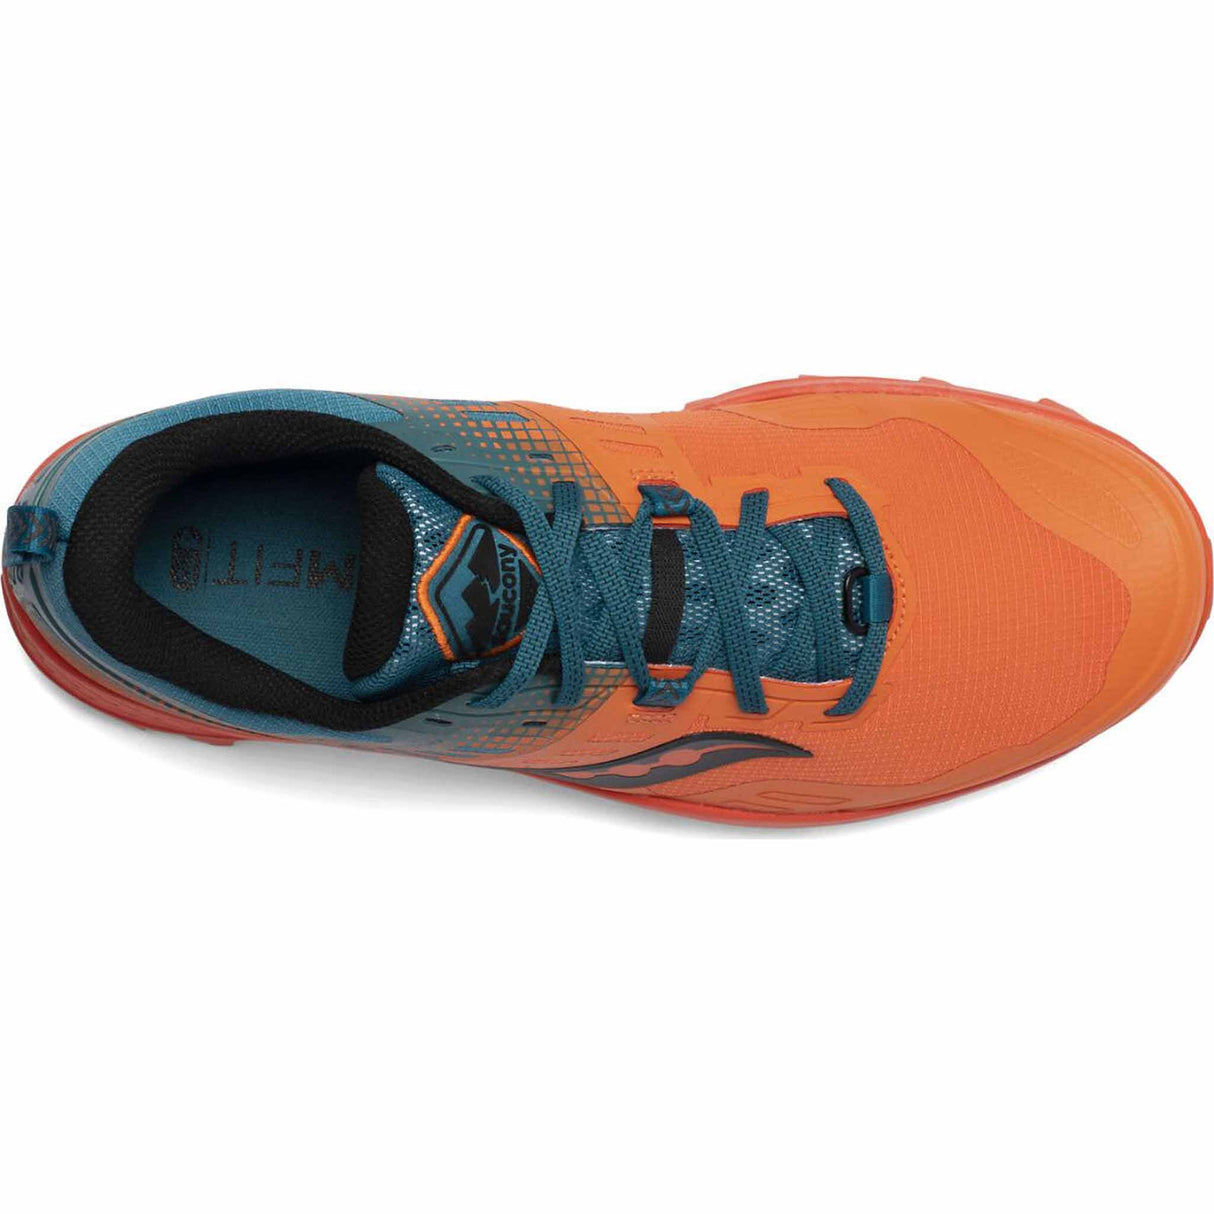 Saucony Peregrine 10 ST Chaussures de course à pied trail homme Orange/Bleu empeigne